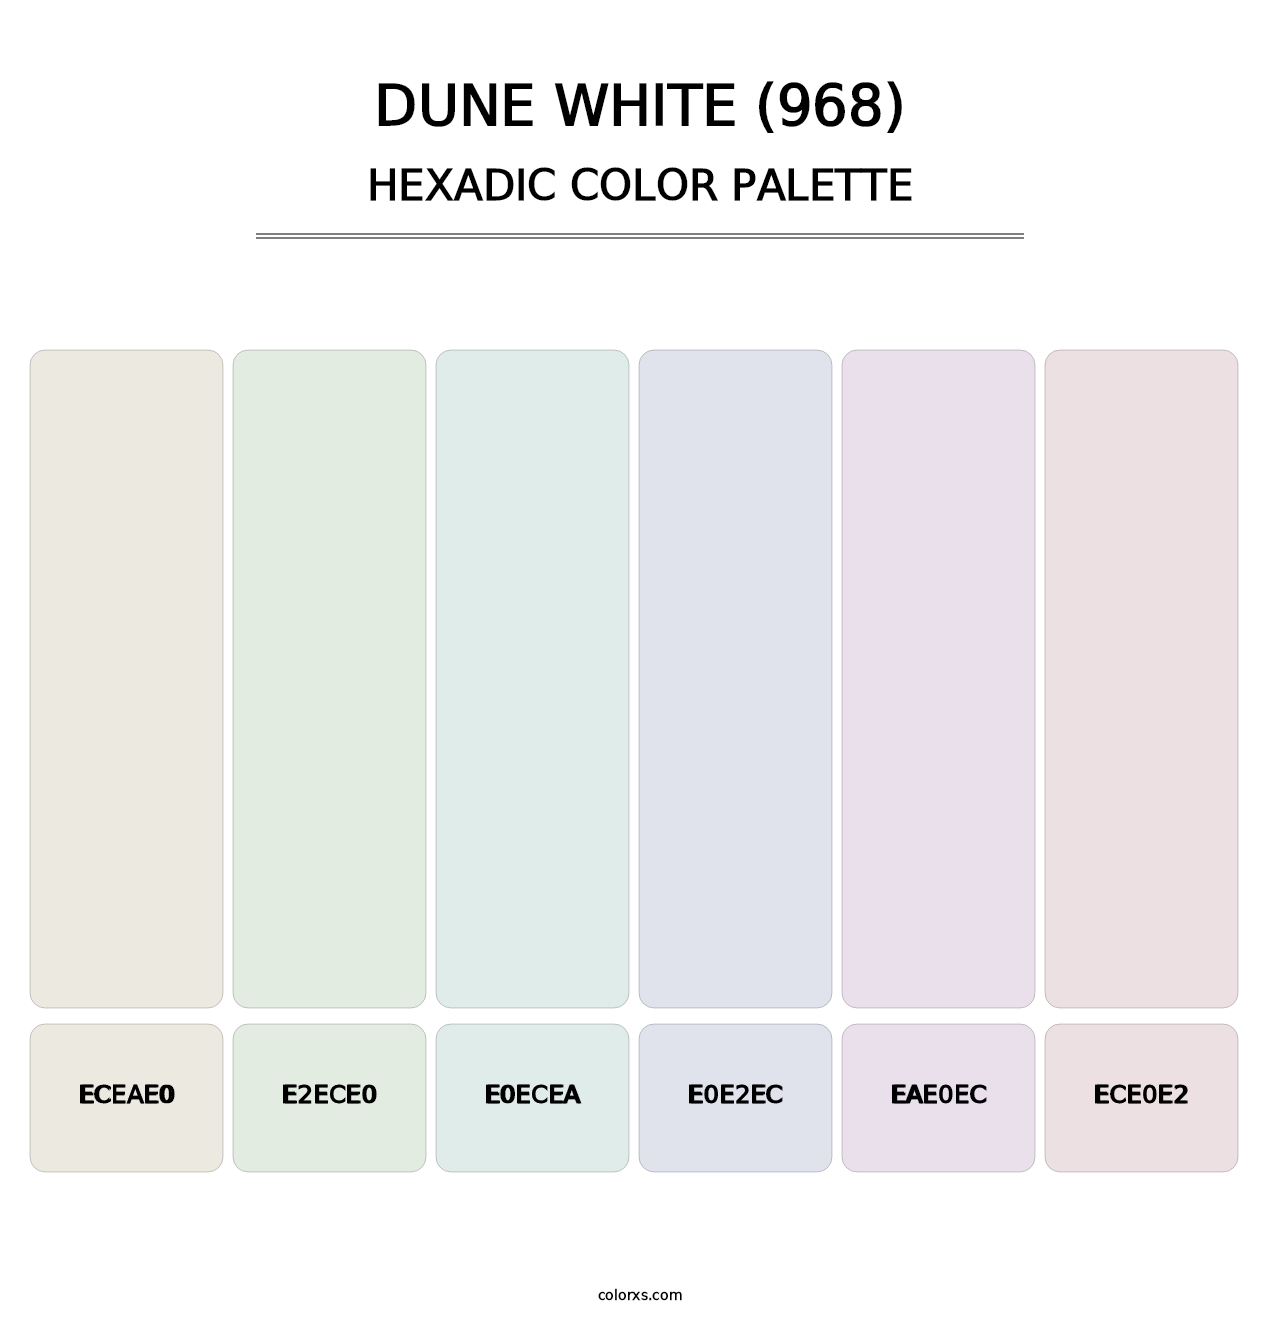 Dune White (968) - Hexadic Color Palette